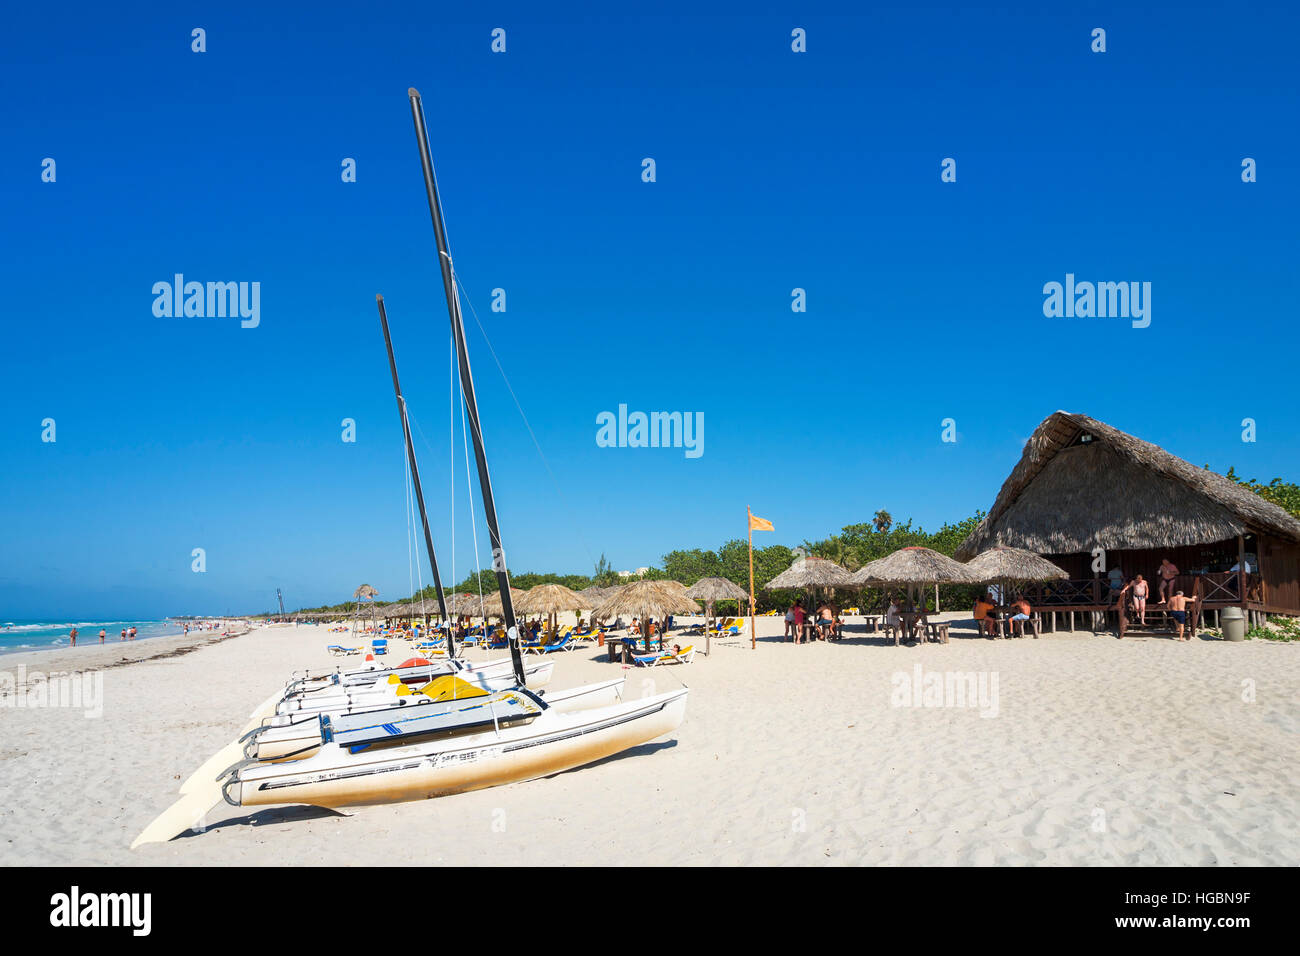 Spiaggia di Varadero, Cuba. La spiaggia e il bar sulla spiaggia. Foto Stock